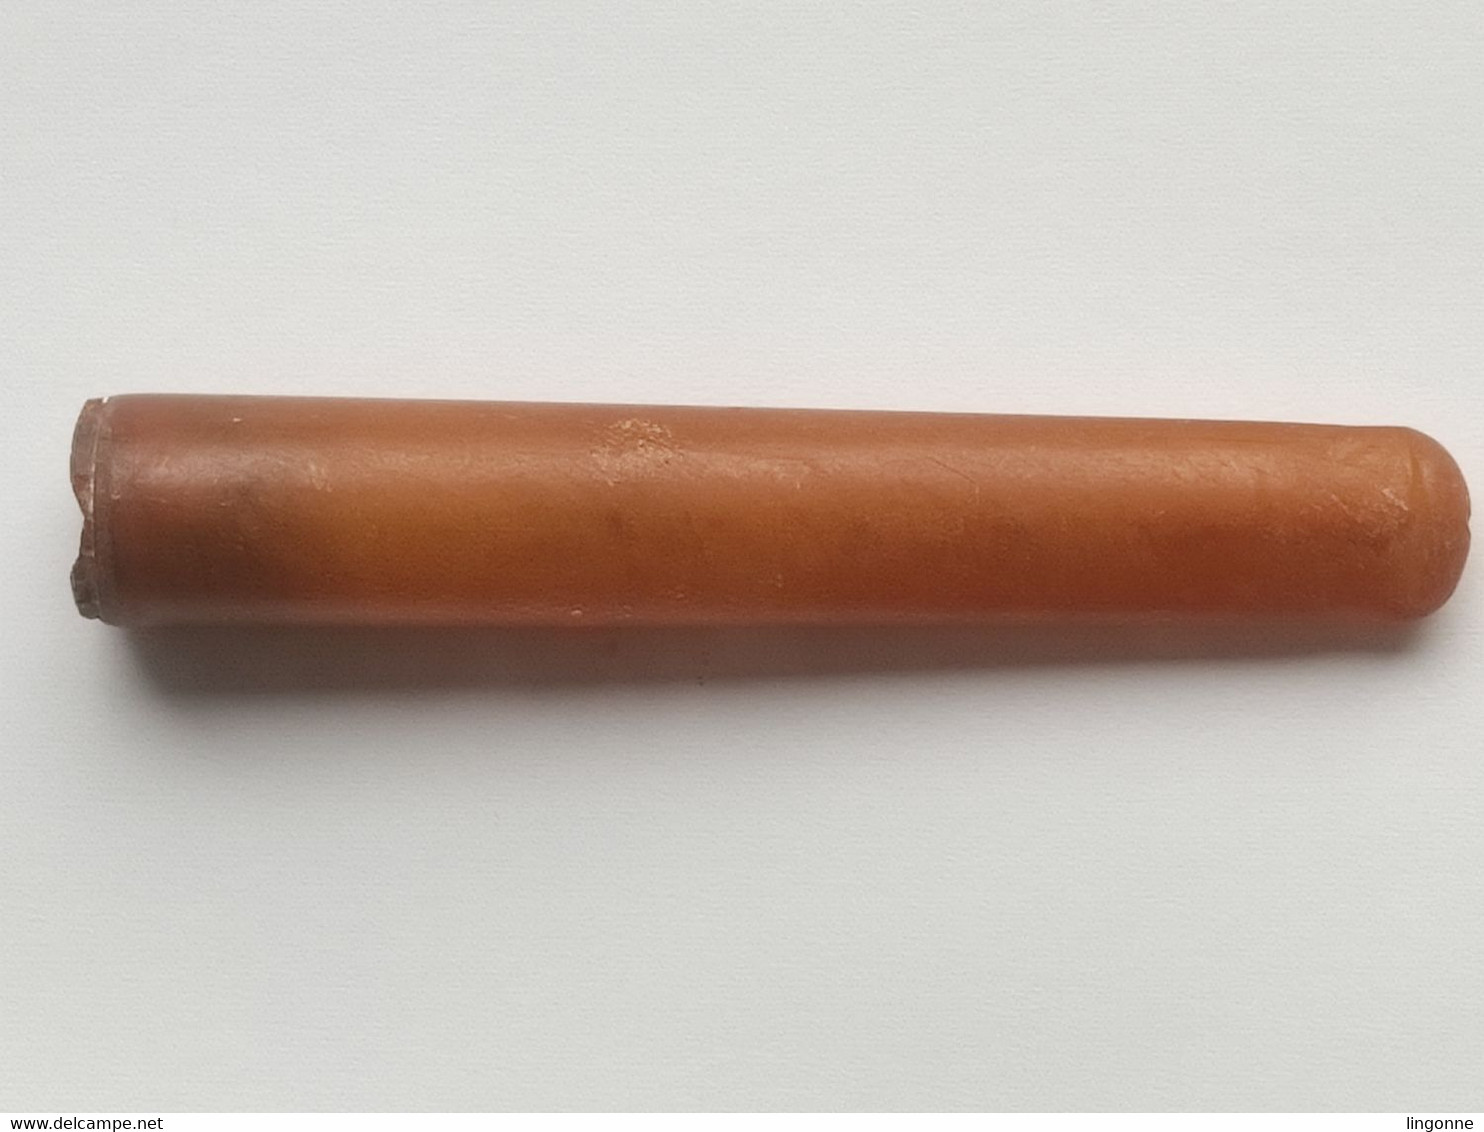 Ancien fume cigarette EPOQUE FIN 19ème SIECLE Long 7,15 cm env